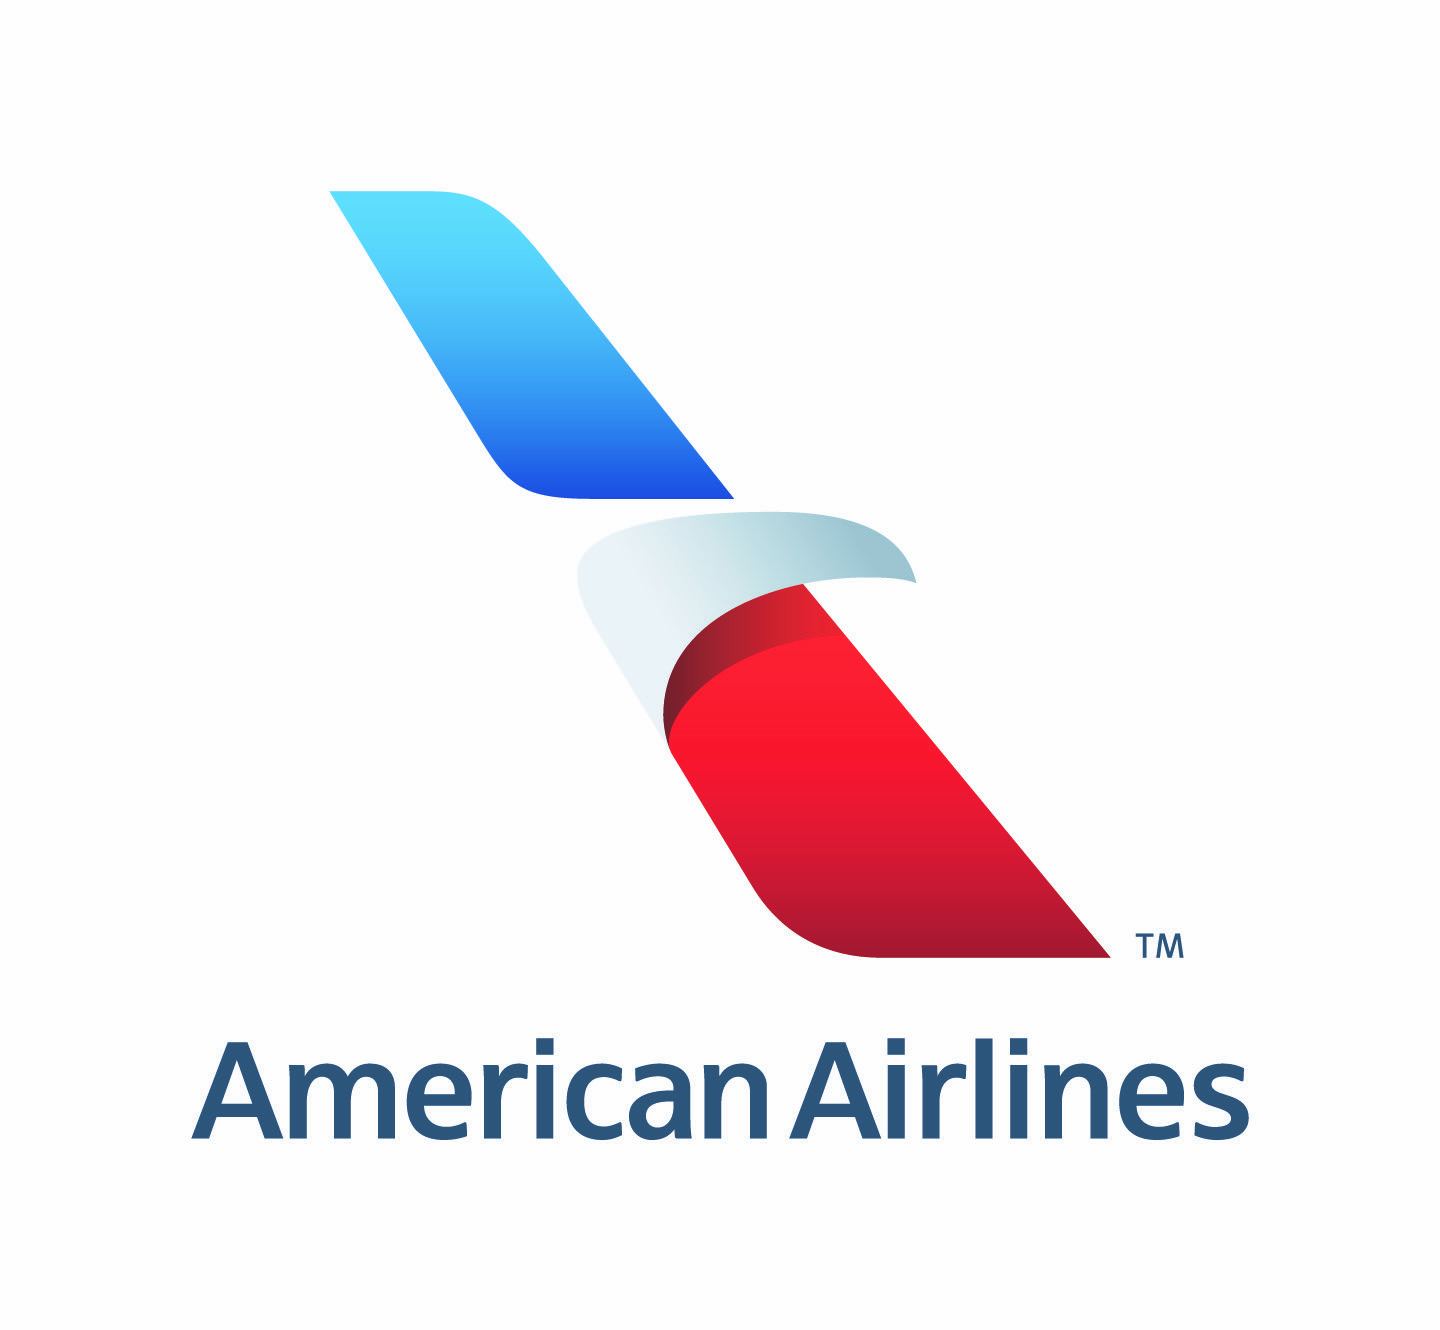 Resultado de imagen para american airlines logo